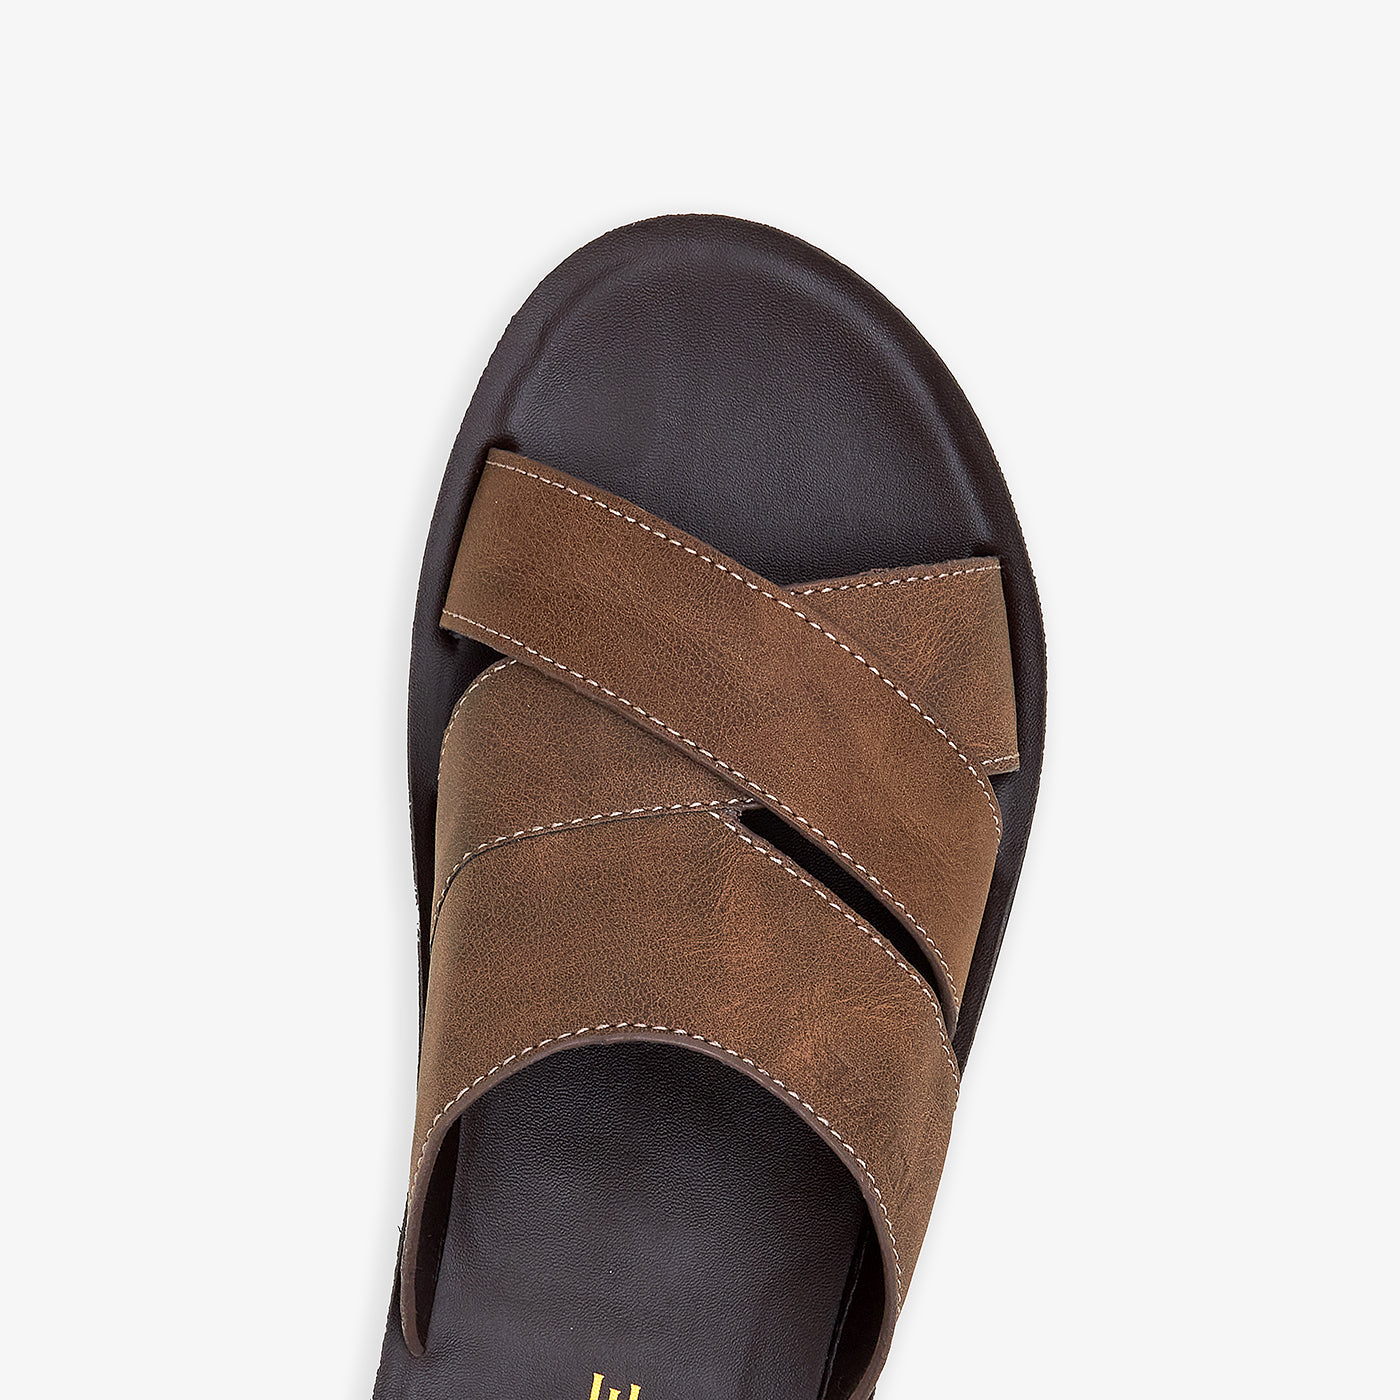 Men's Cool Summer Sandals